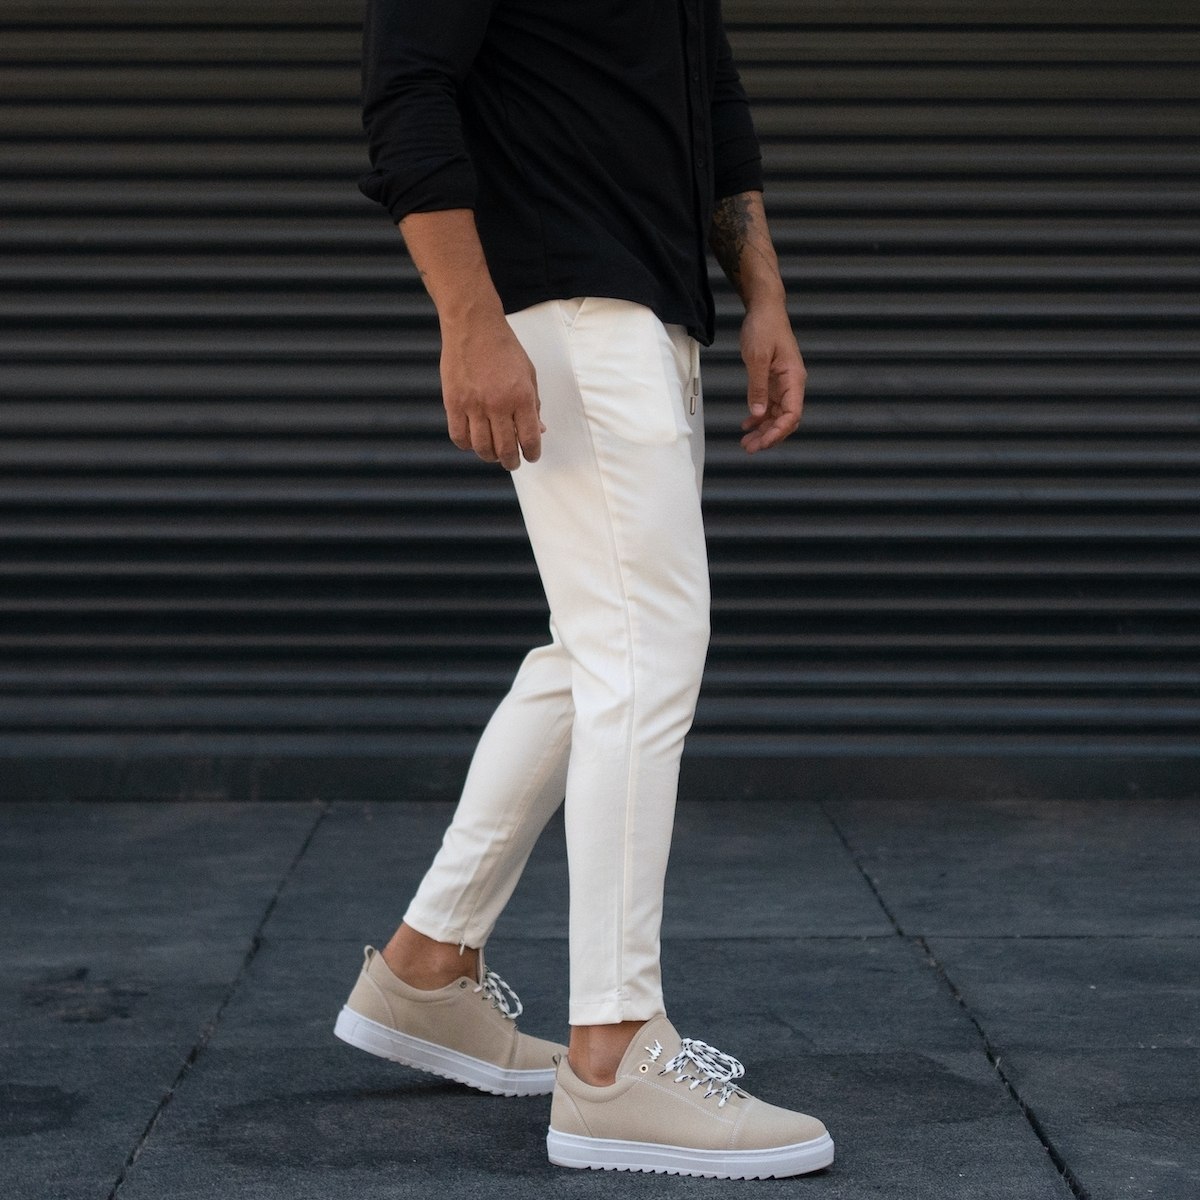 Men's Designer Trousers Pants Light Fabric White